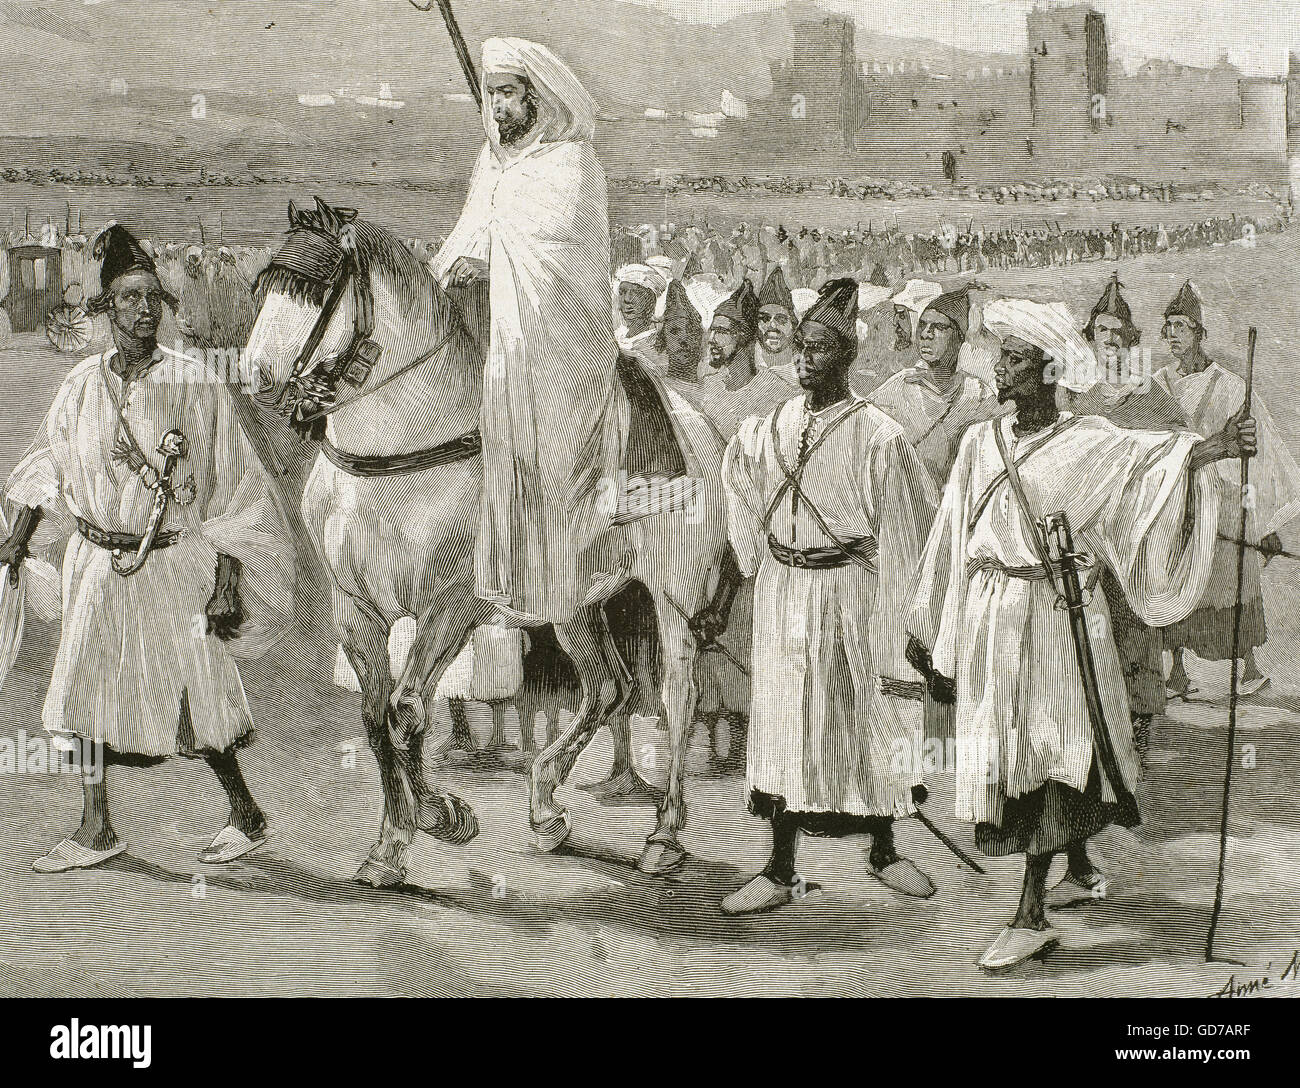 Hassan ich (1836 – 1894), Sultan von Marokko (1873 – 1894), hoch zu Ross mit seinem Gefolge. Gravur. Stockfoto